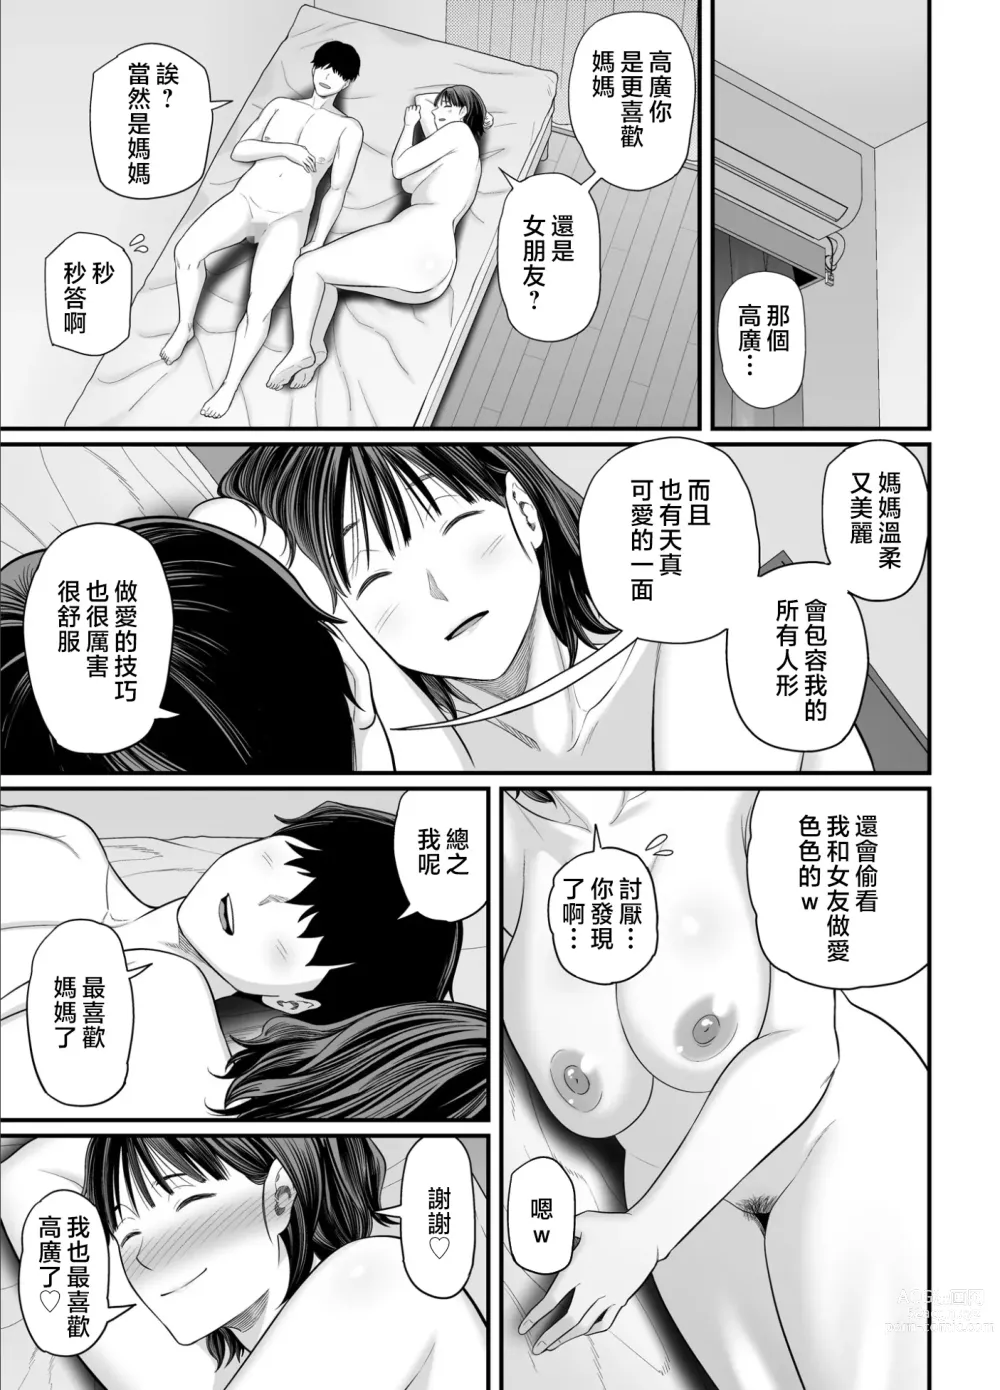 Page 38 of doujinshi 母親是在誘惑我吧?2